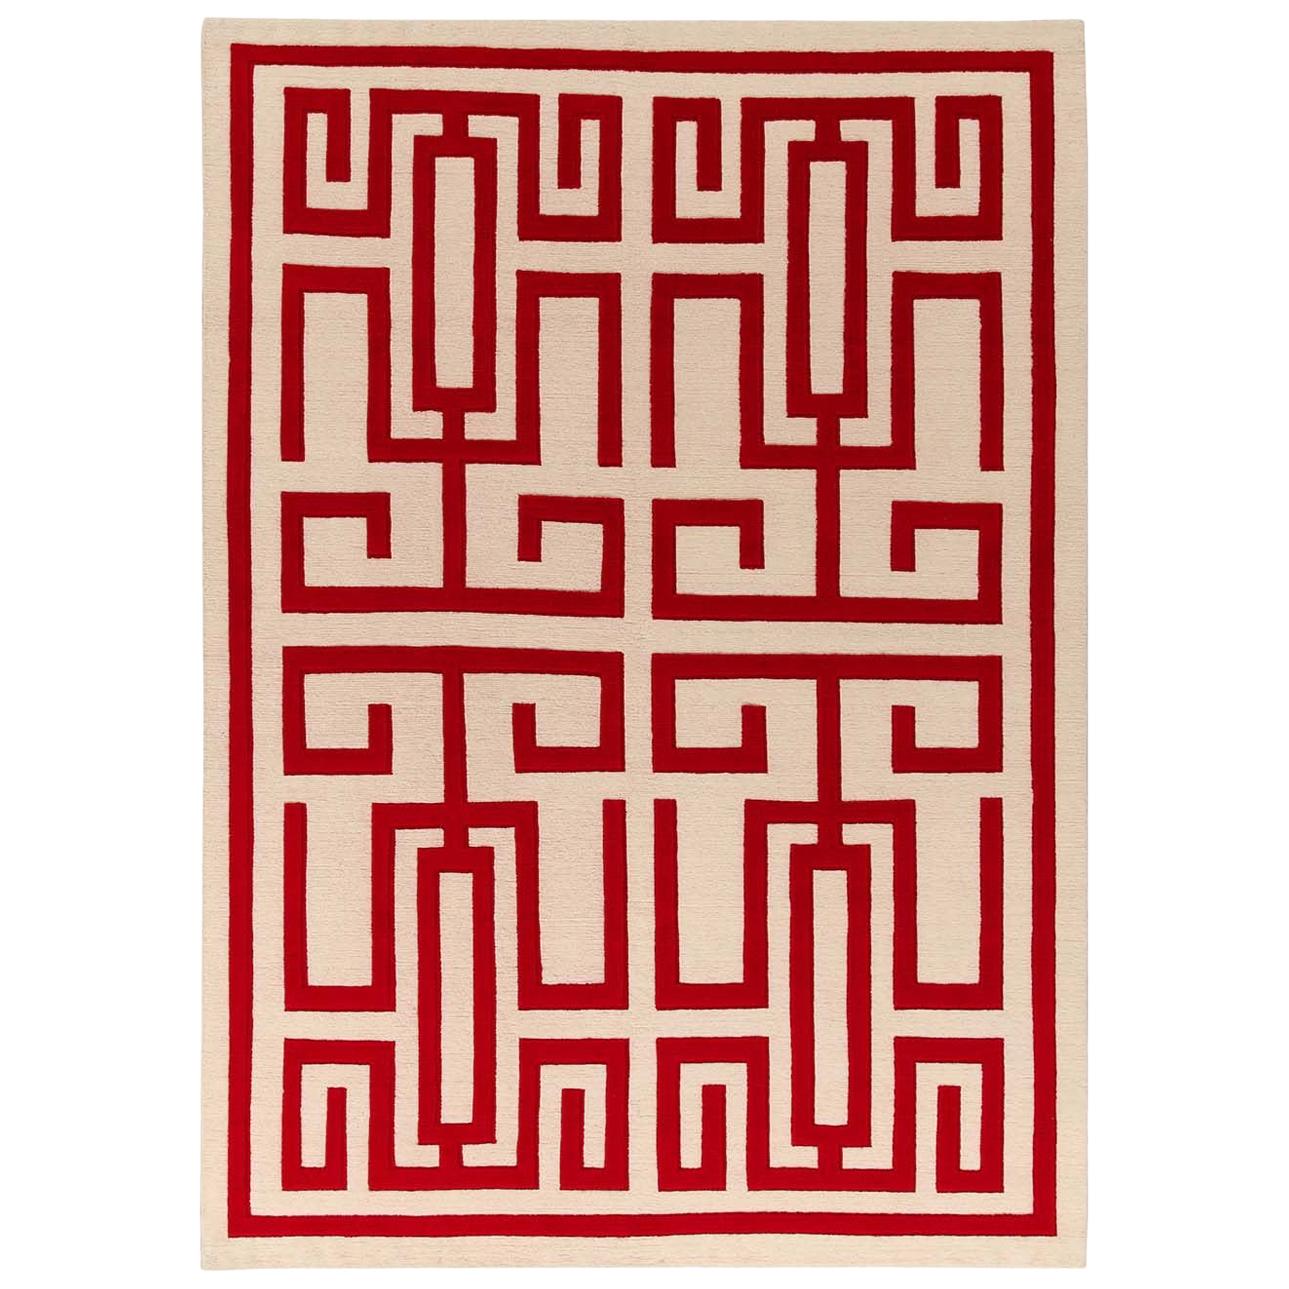 Labirinto Red Carpet by Gio Ponti